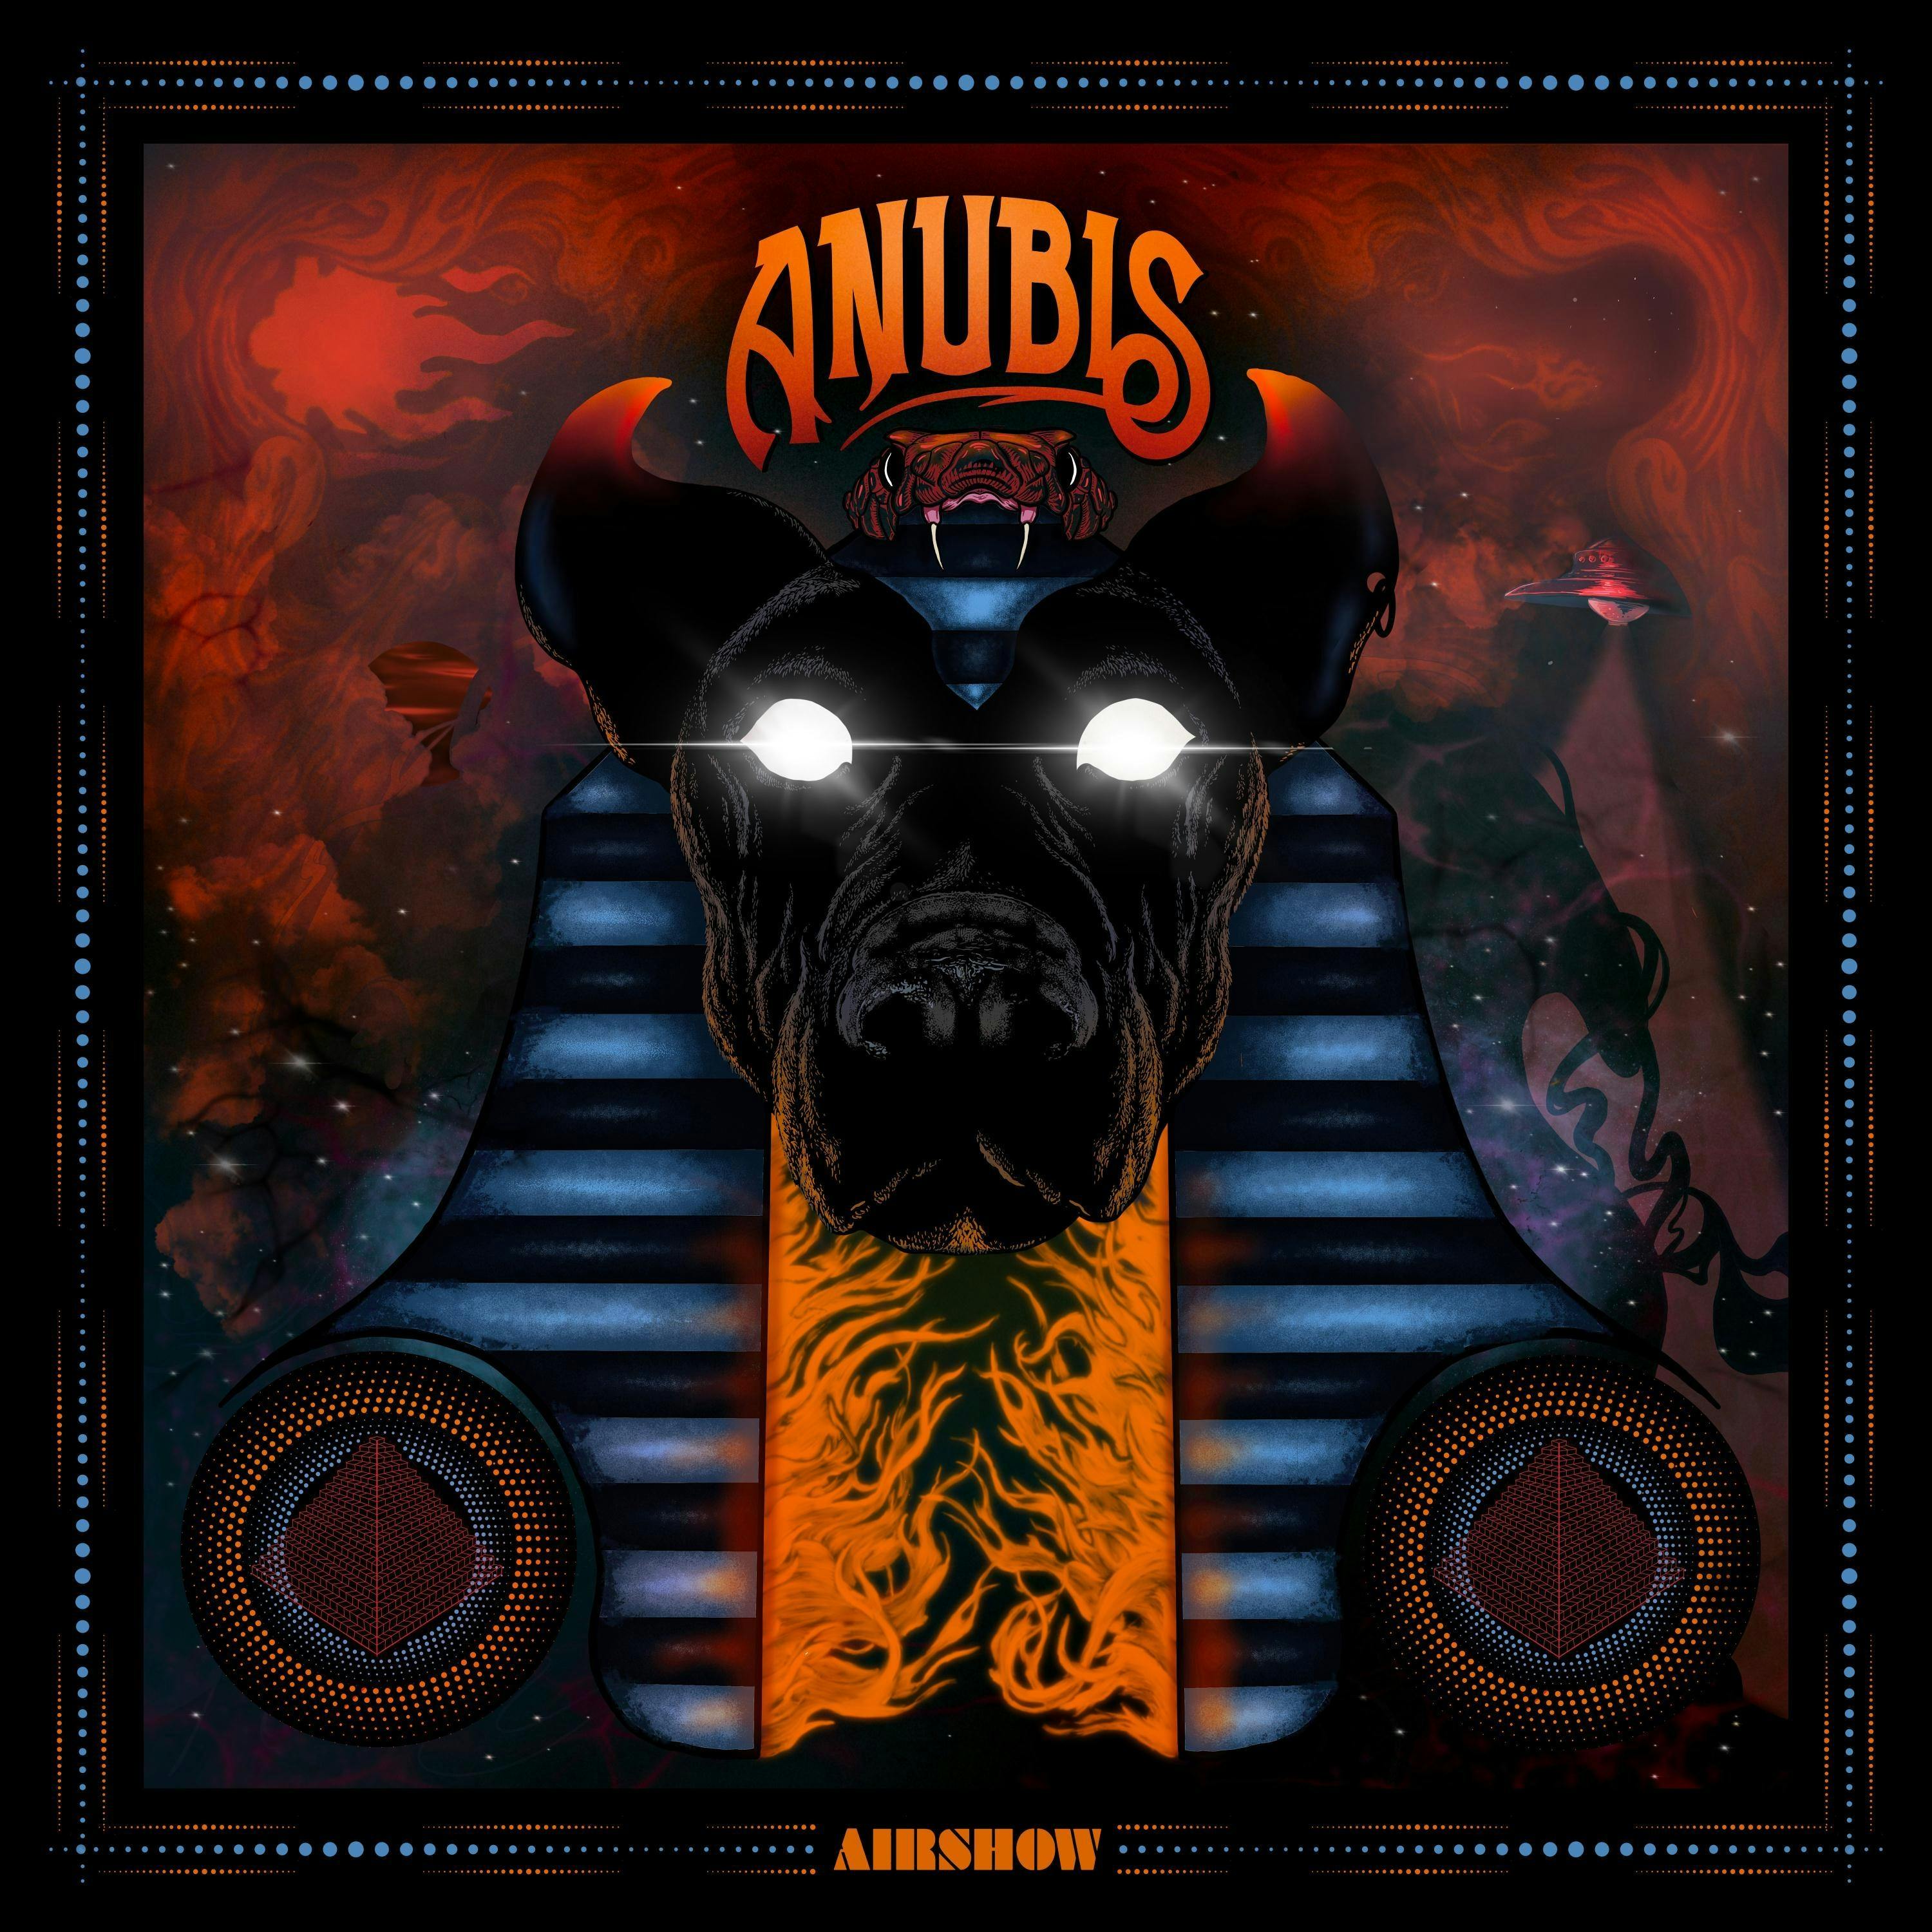 Anubis album cover